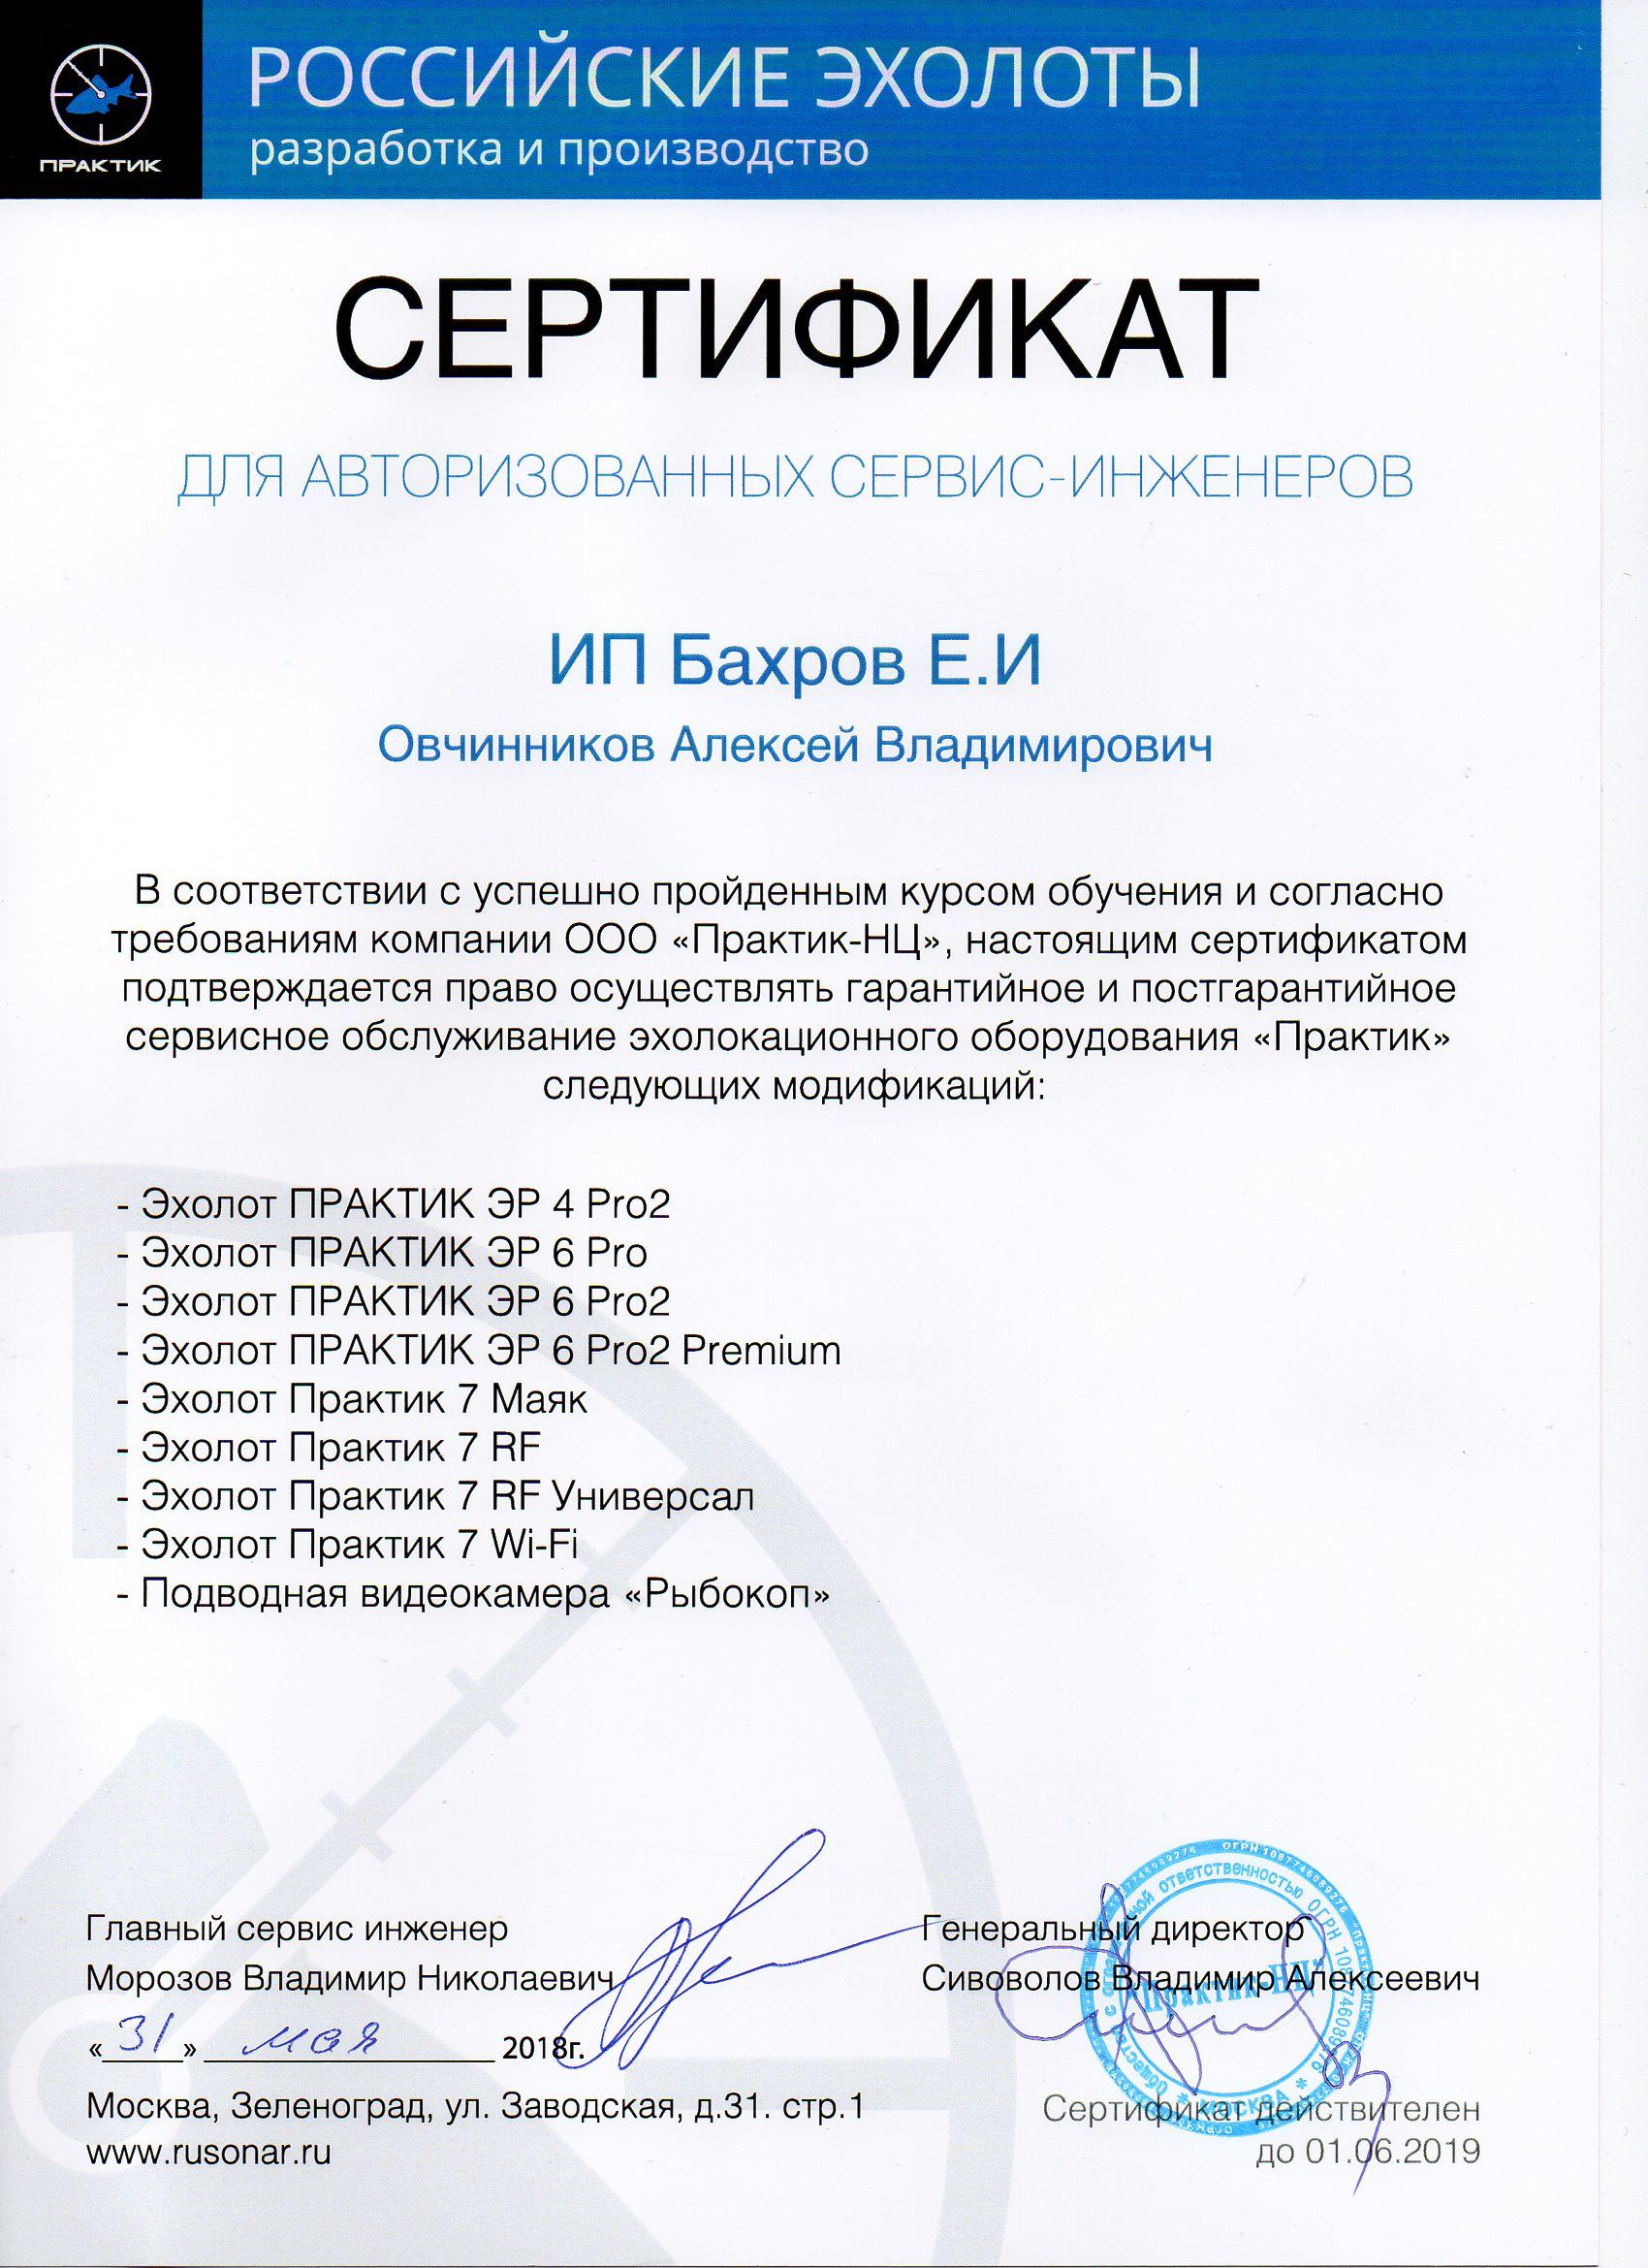 Сертификат на право осуществления работ по эхолотам Практик